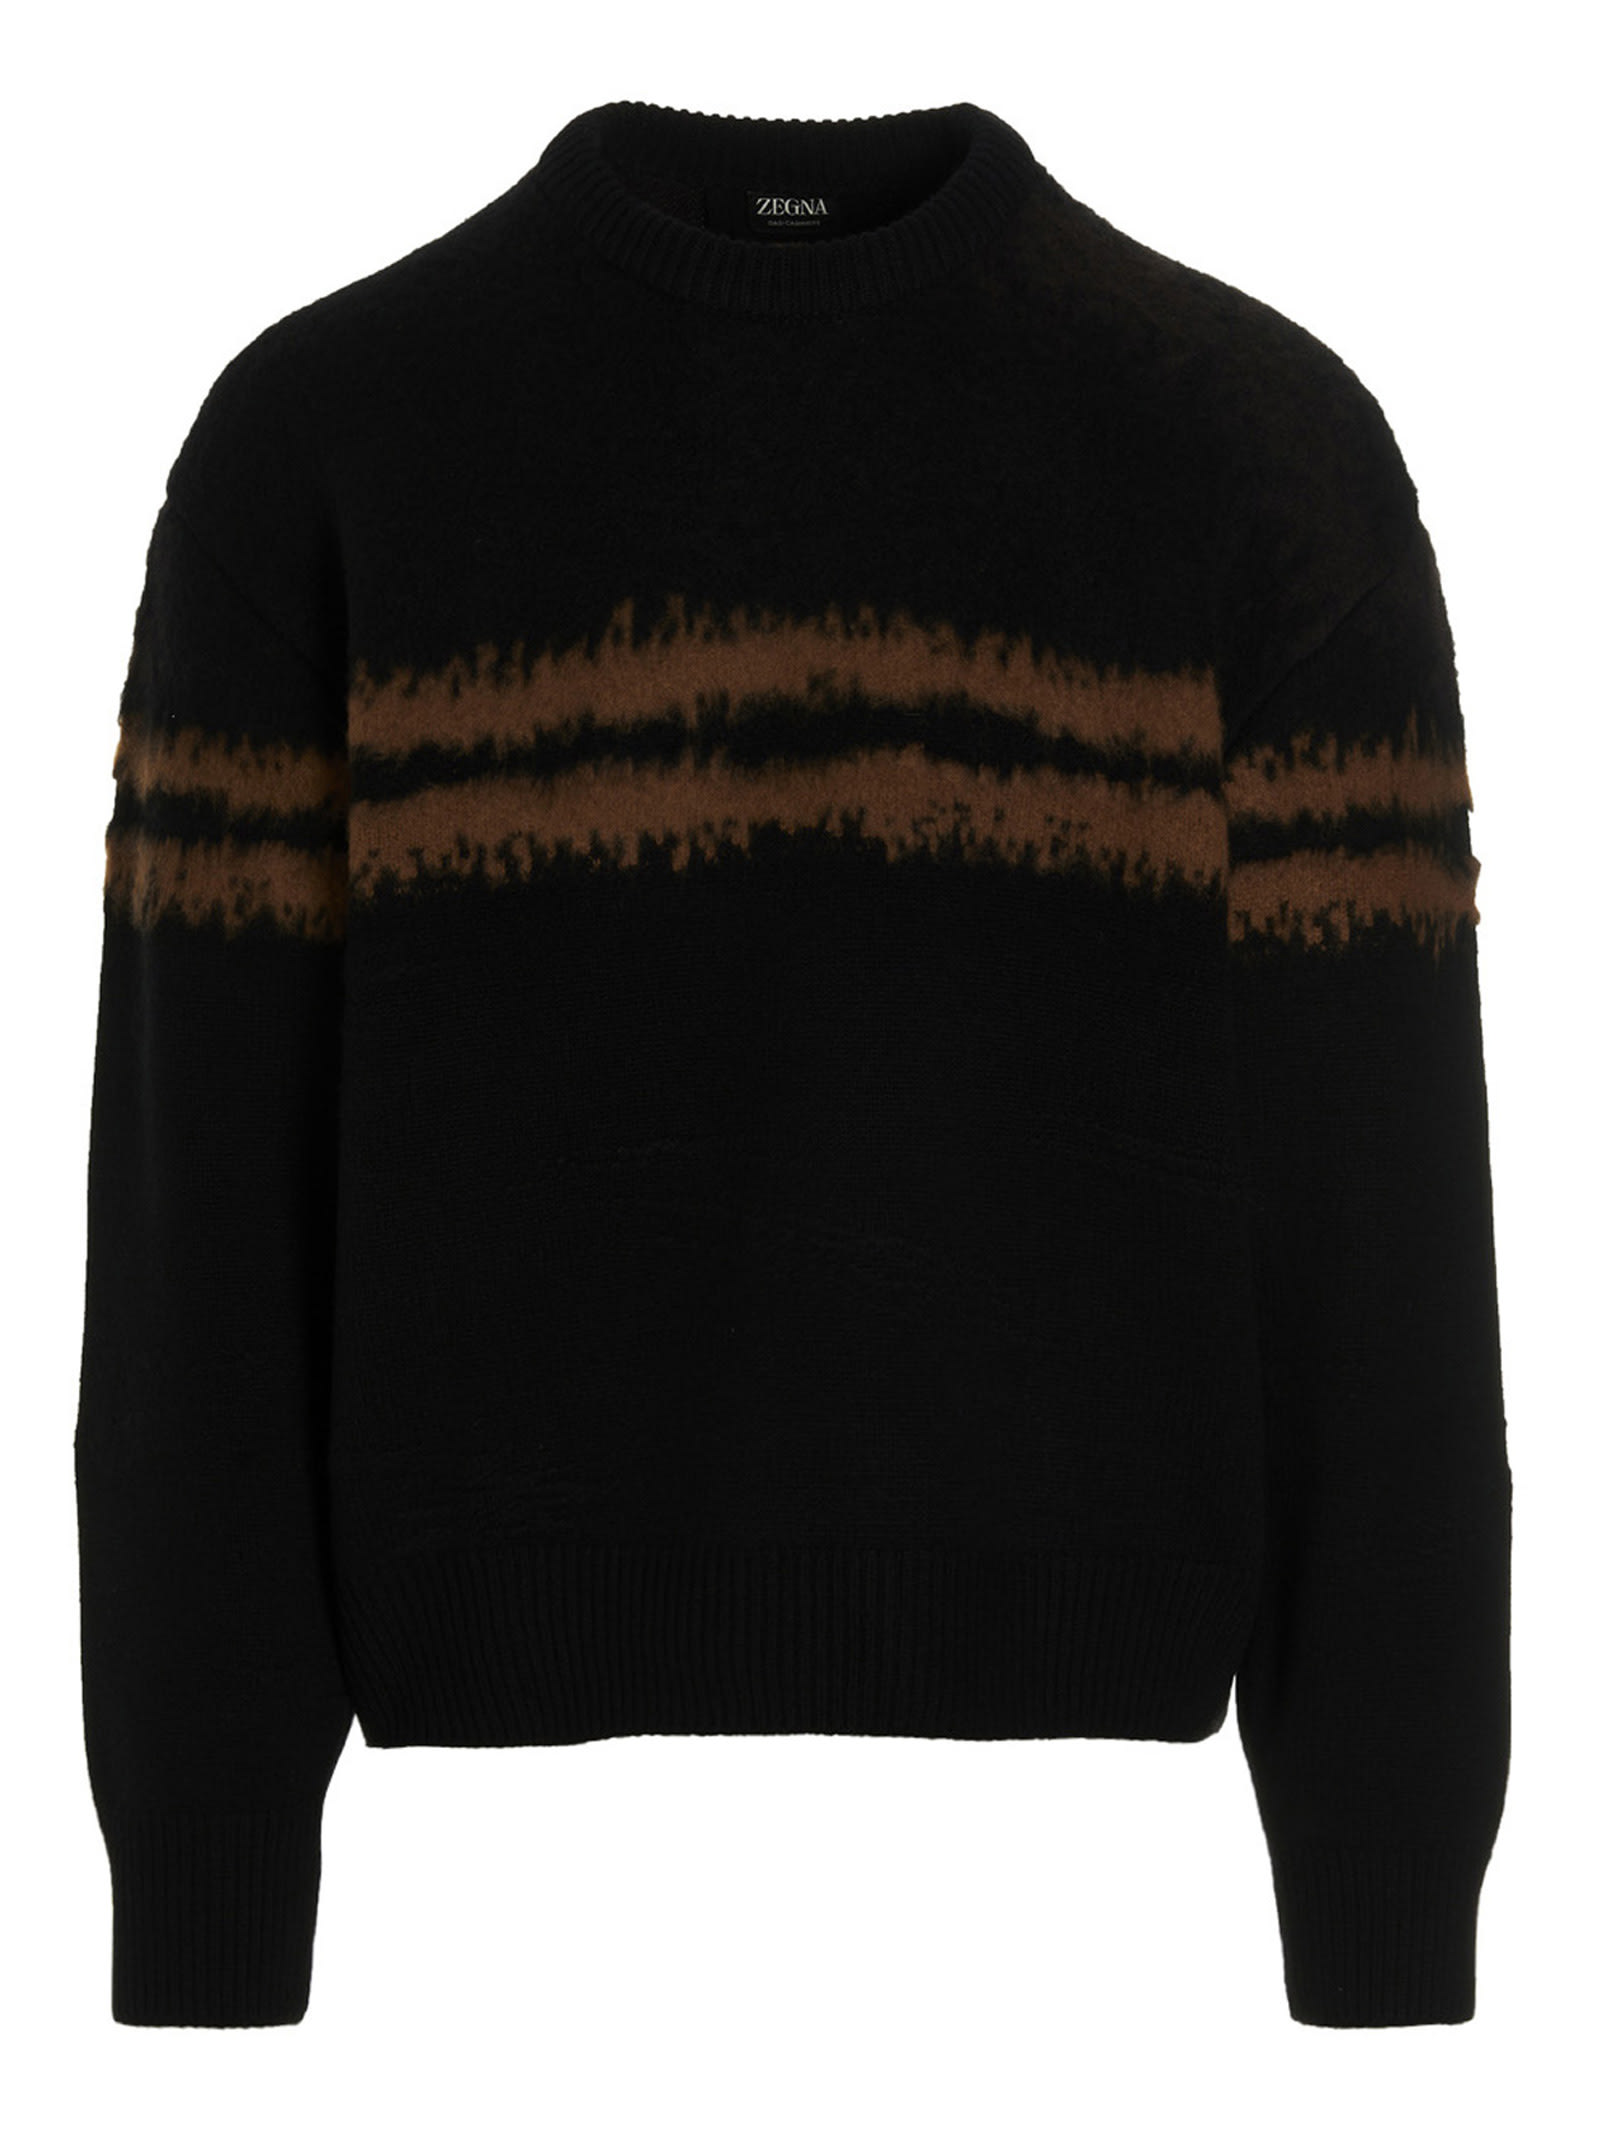 Ermenegildo Zegna Contrast Detail Sweater